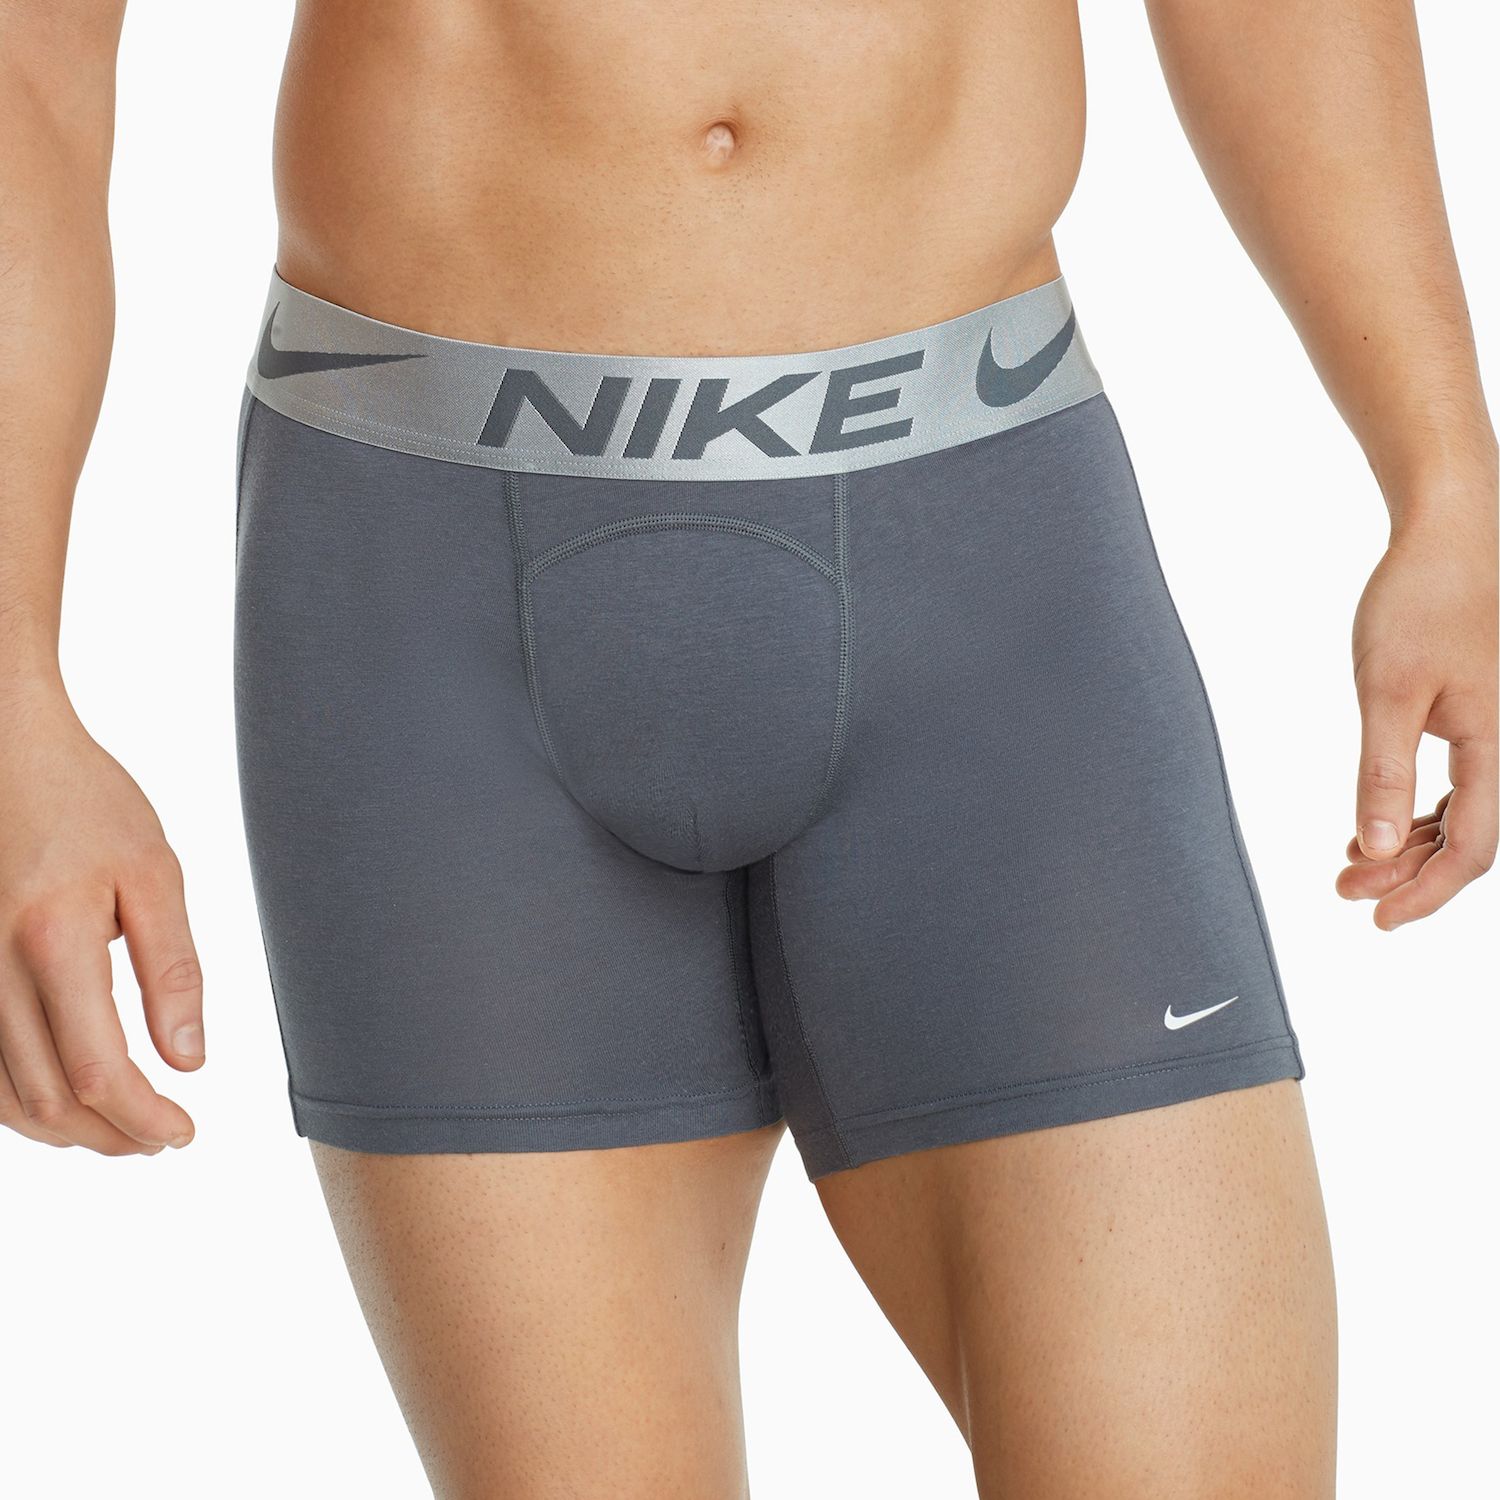 Men's Nike Luxe Cotton-Blend Boxer Briefs